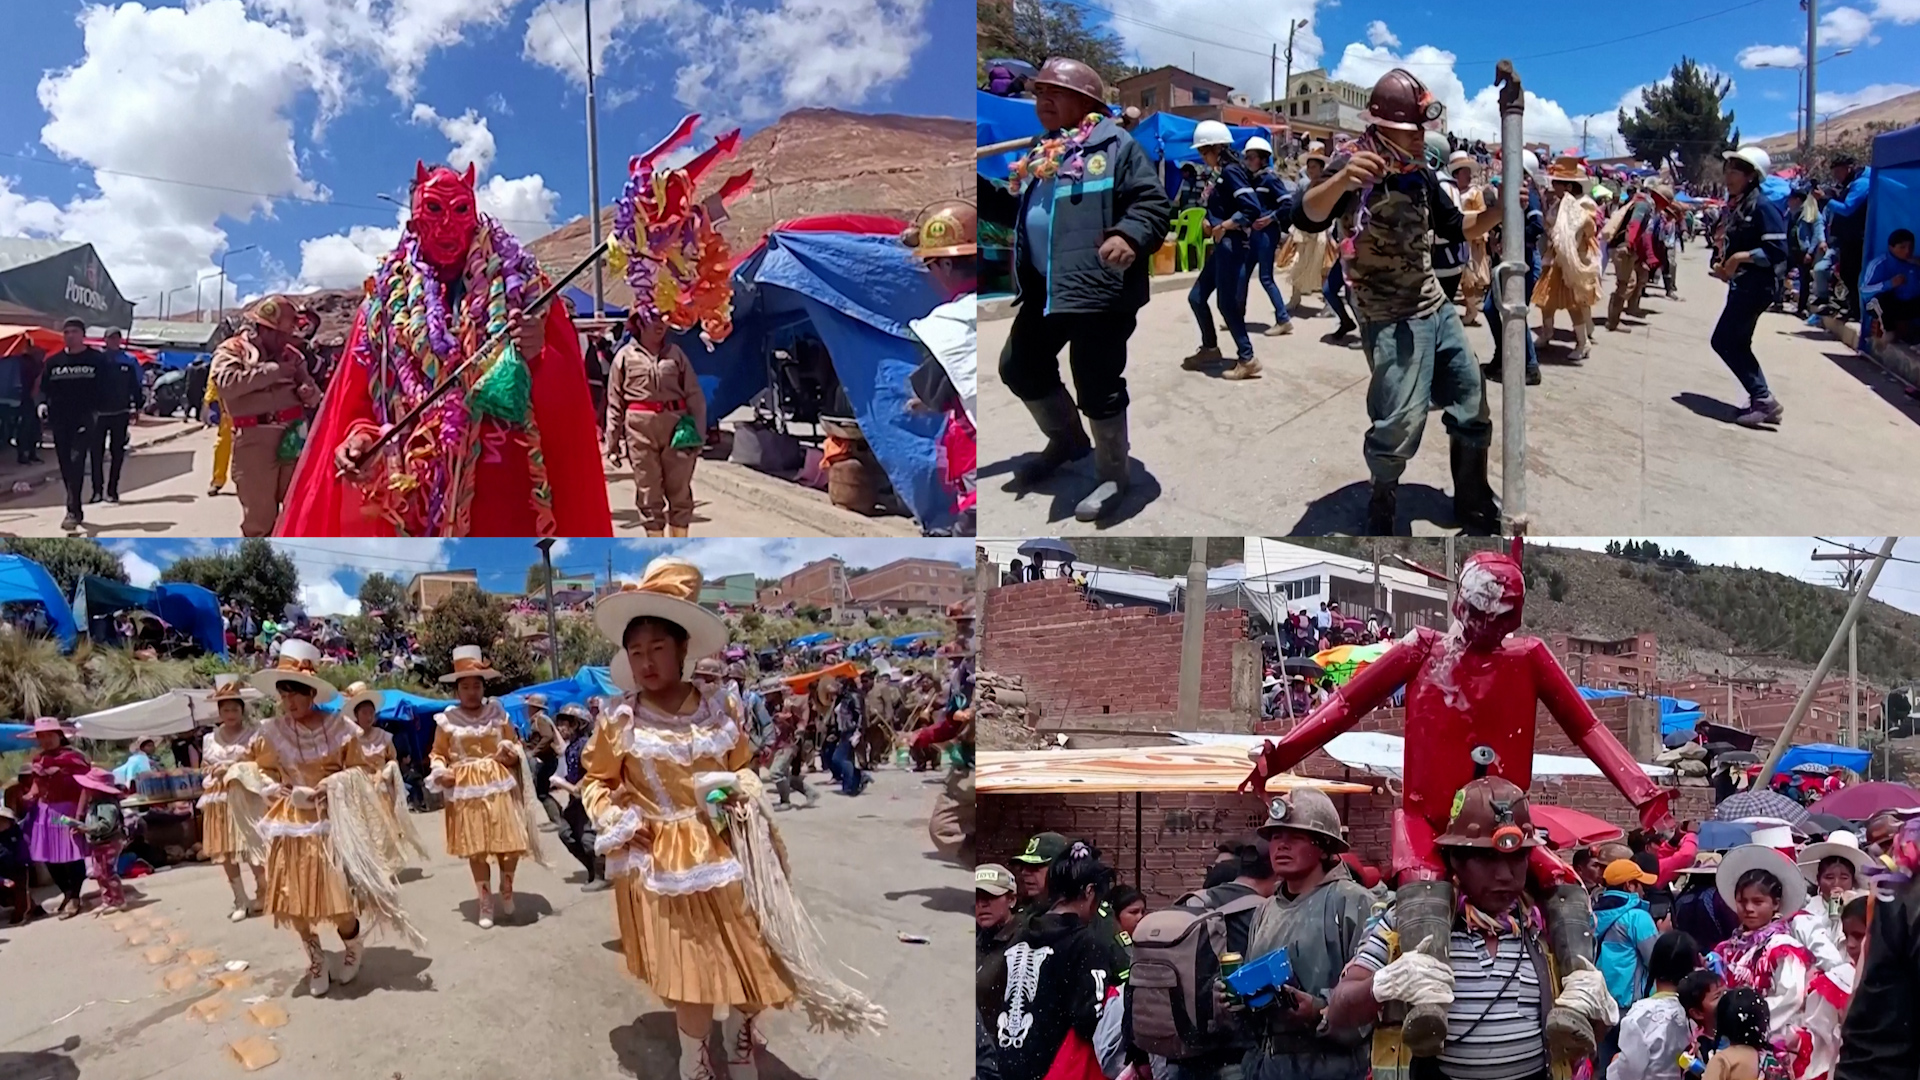 Βίντεο: Οι μεταλλωρύχοι της Βολιβίας παρελαύνουν στο παραδοσιακό Καρναβάλι των Μεταλλωρύχων